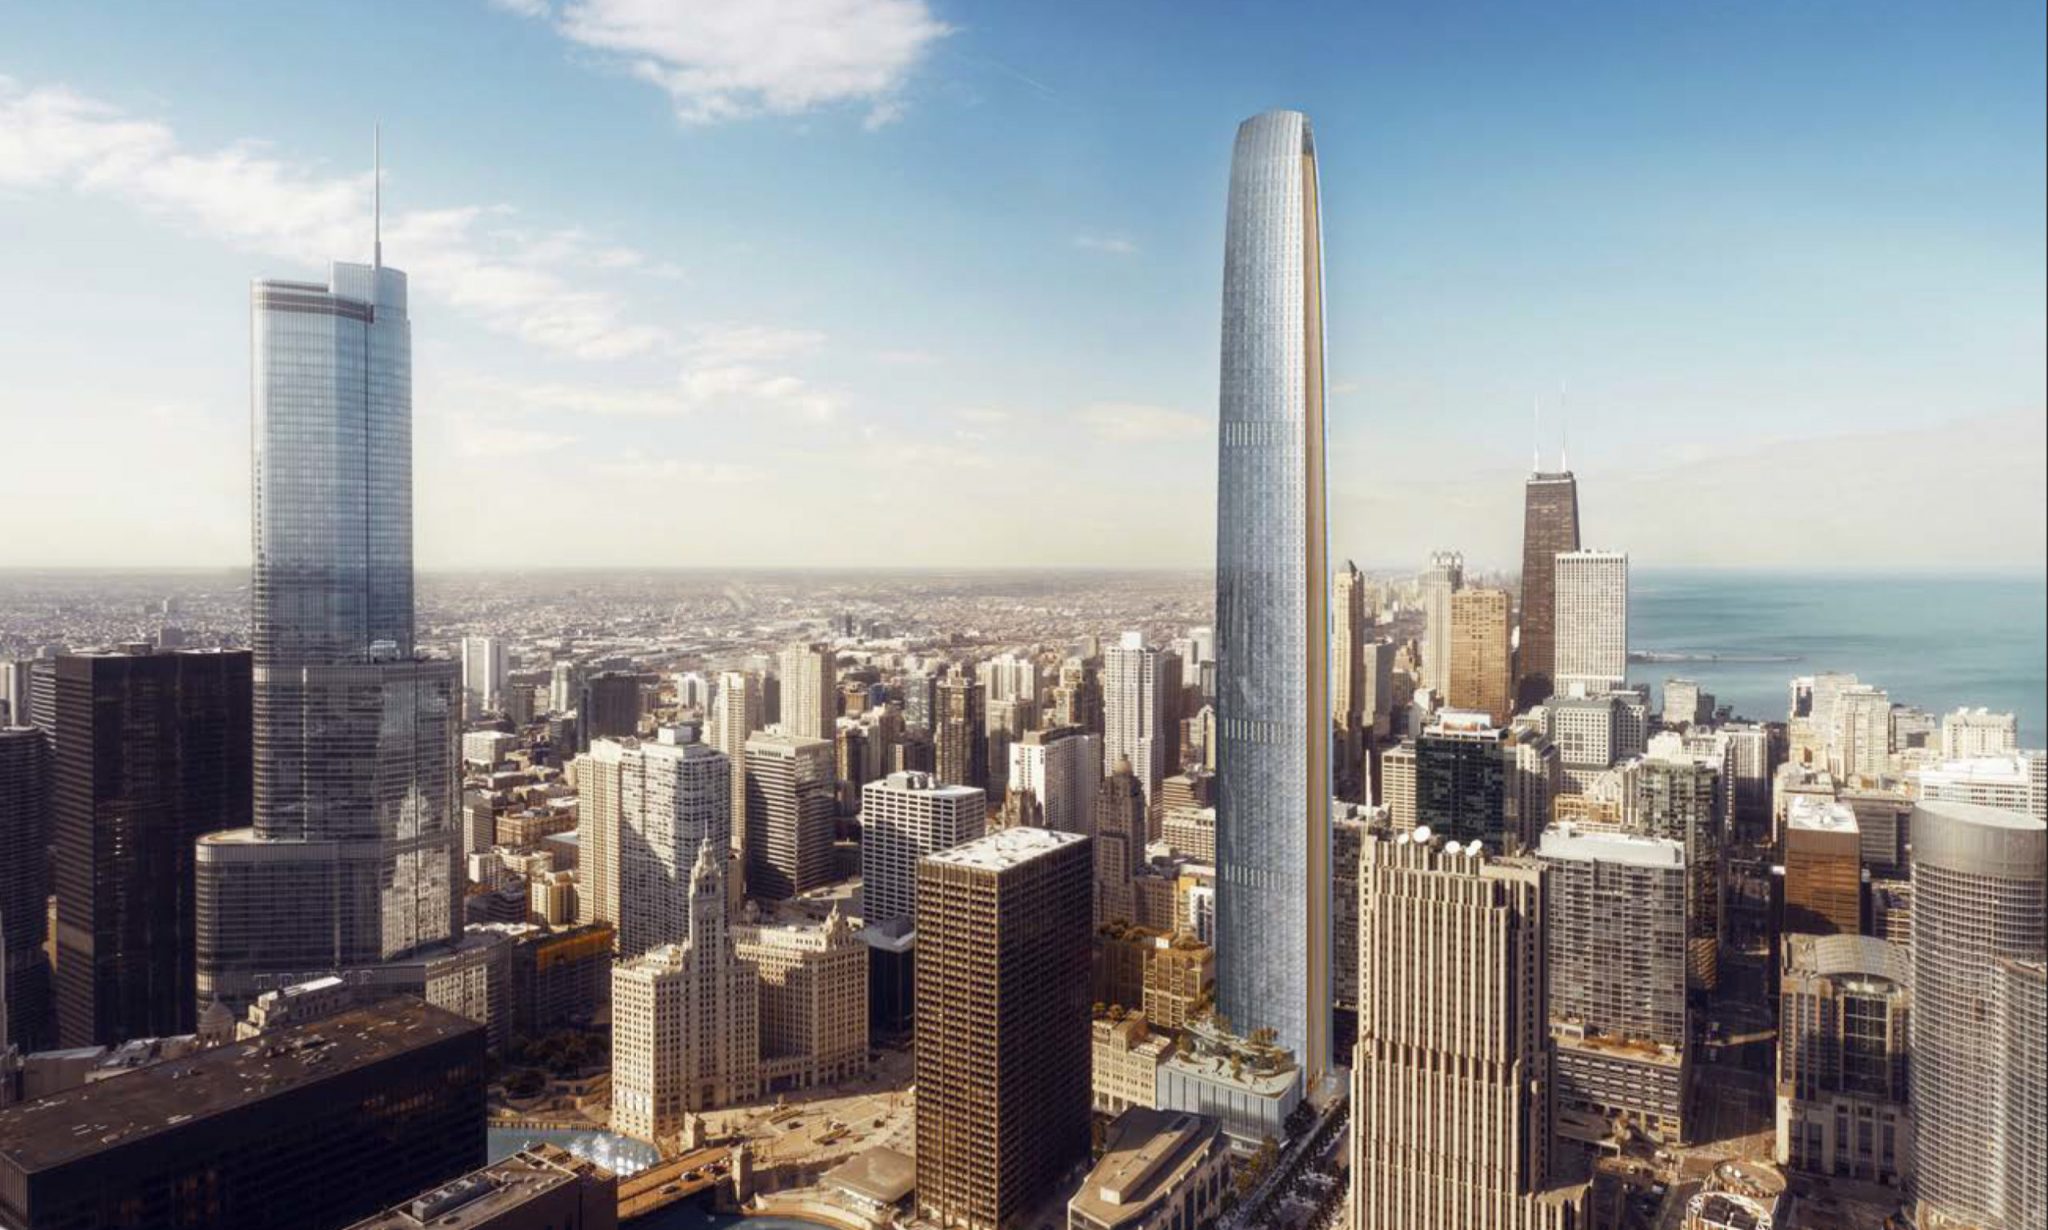 Tribune Tower Condominium Conversion's Exterior Wraps Up Chicago YIMBY